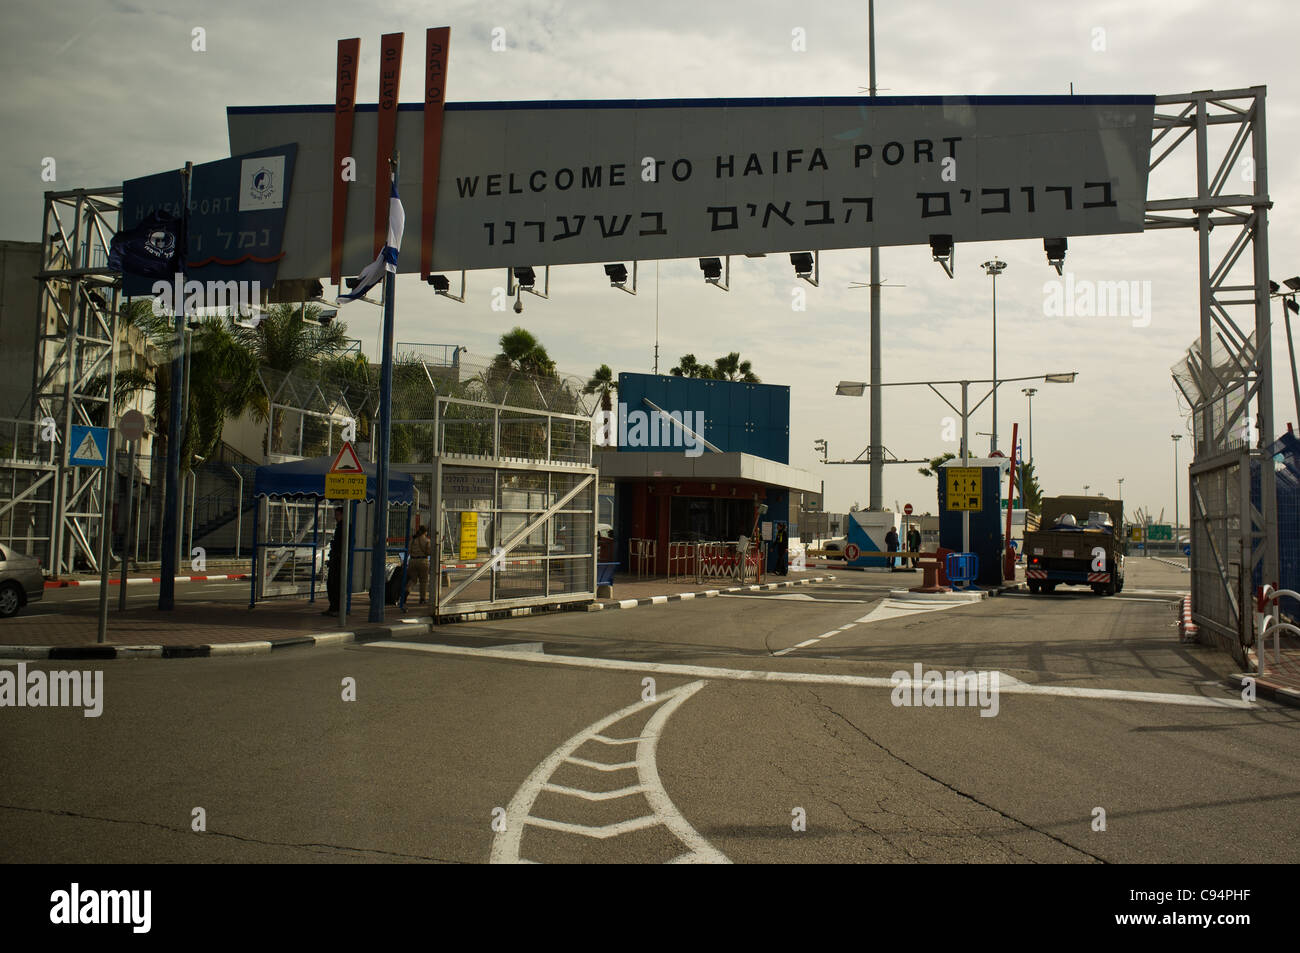 Eingang in den Hafen von Haifa und positioniert sich als das wichtigste Tor zu den Staat Israel und der wichtigste Hafen für Seehandel im östlichen Mittelmeer als Passagier- und Verkehr Überspannungen. Haifa, Israel. 13. November 2011. Stockfoto